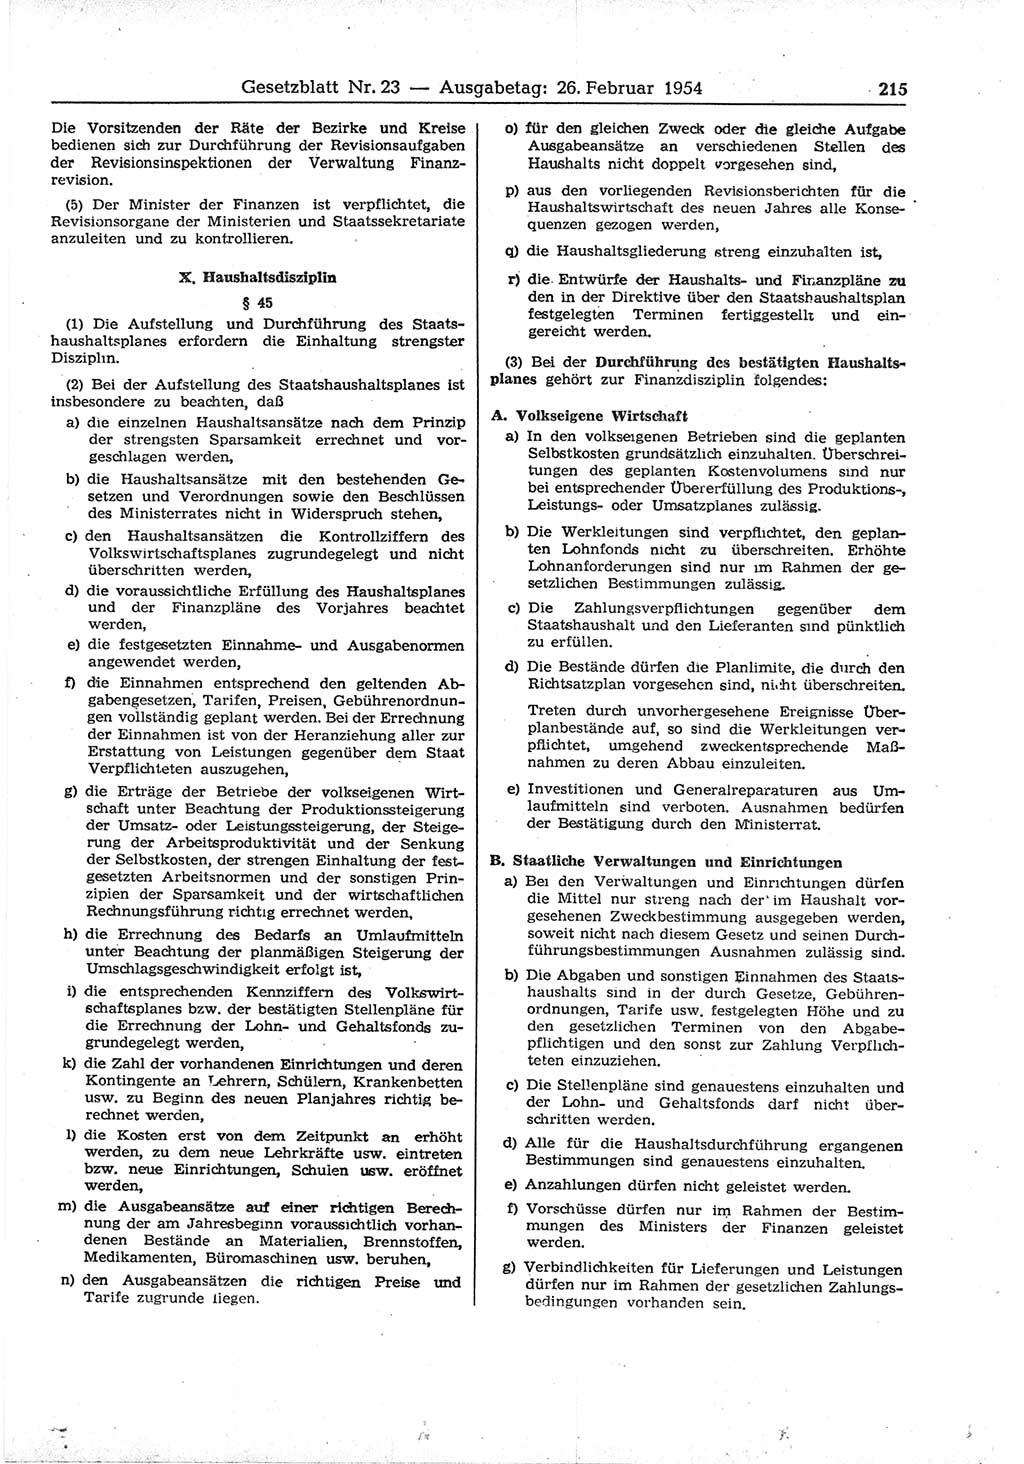 Gesetzblatt (GBl.) der Deutschen Demokratischen Republik (DDR) 1954, Seite 215 (GBl. DDR 1954, S. 215)